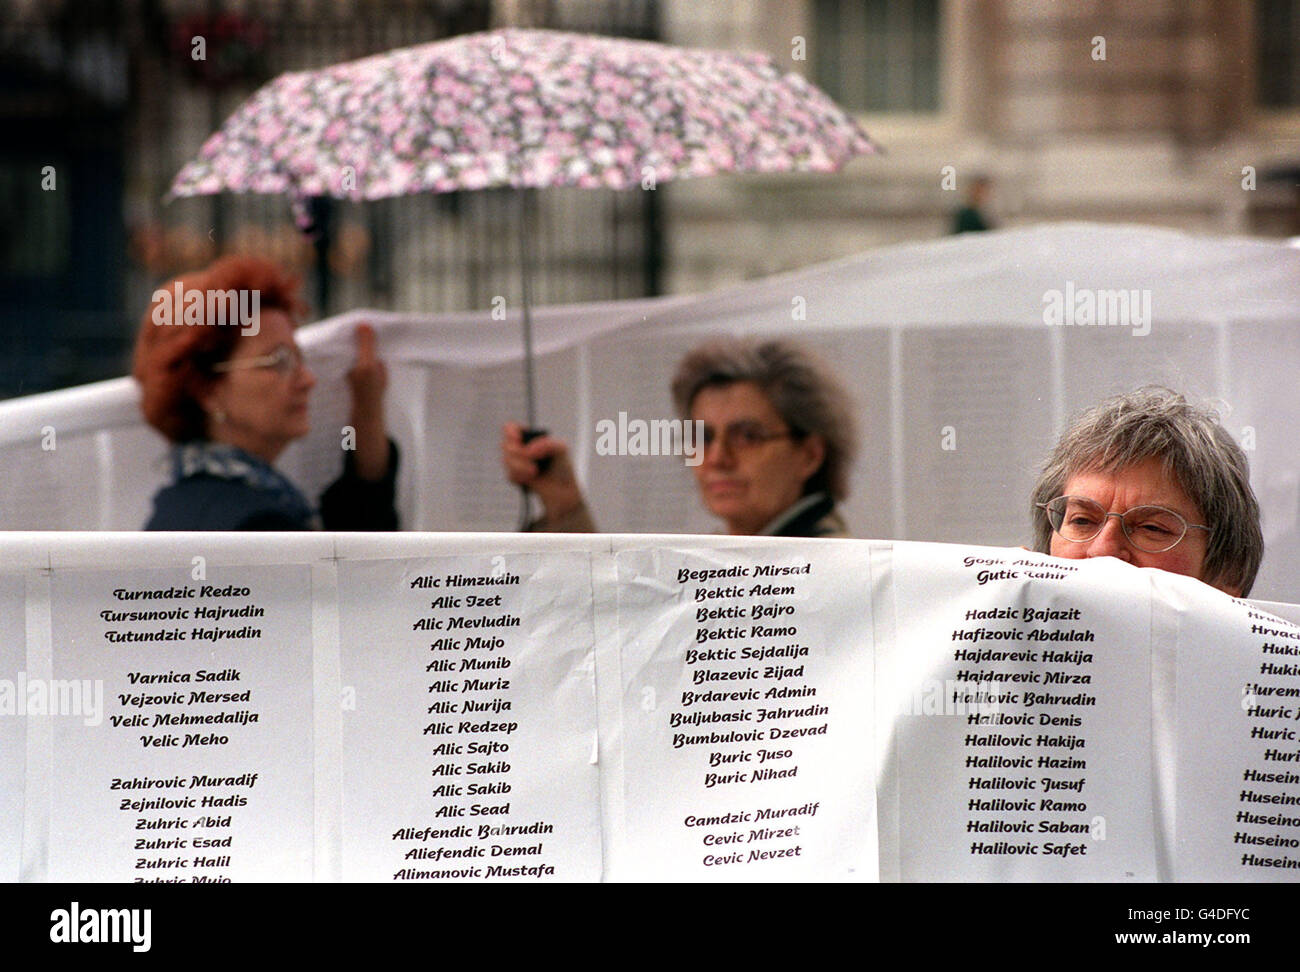 Mitzi Bales de Londres détient une partie d'une bannière à Whitehall, dans le centre de Londres aujourd'hui (samedi) affichant les 7300 noms répertoriés à ce jour par la Croix-Rouge comme victimes du massacre de Srebrenica, qui s'est produit il y a trois ans aujourd'hui.Photo de Ben Curtis/PA. Banque D'Images